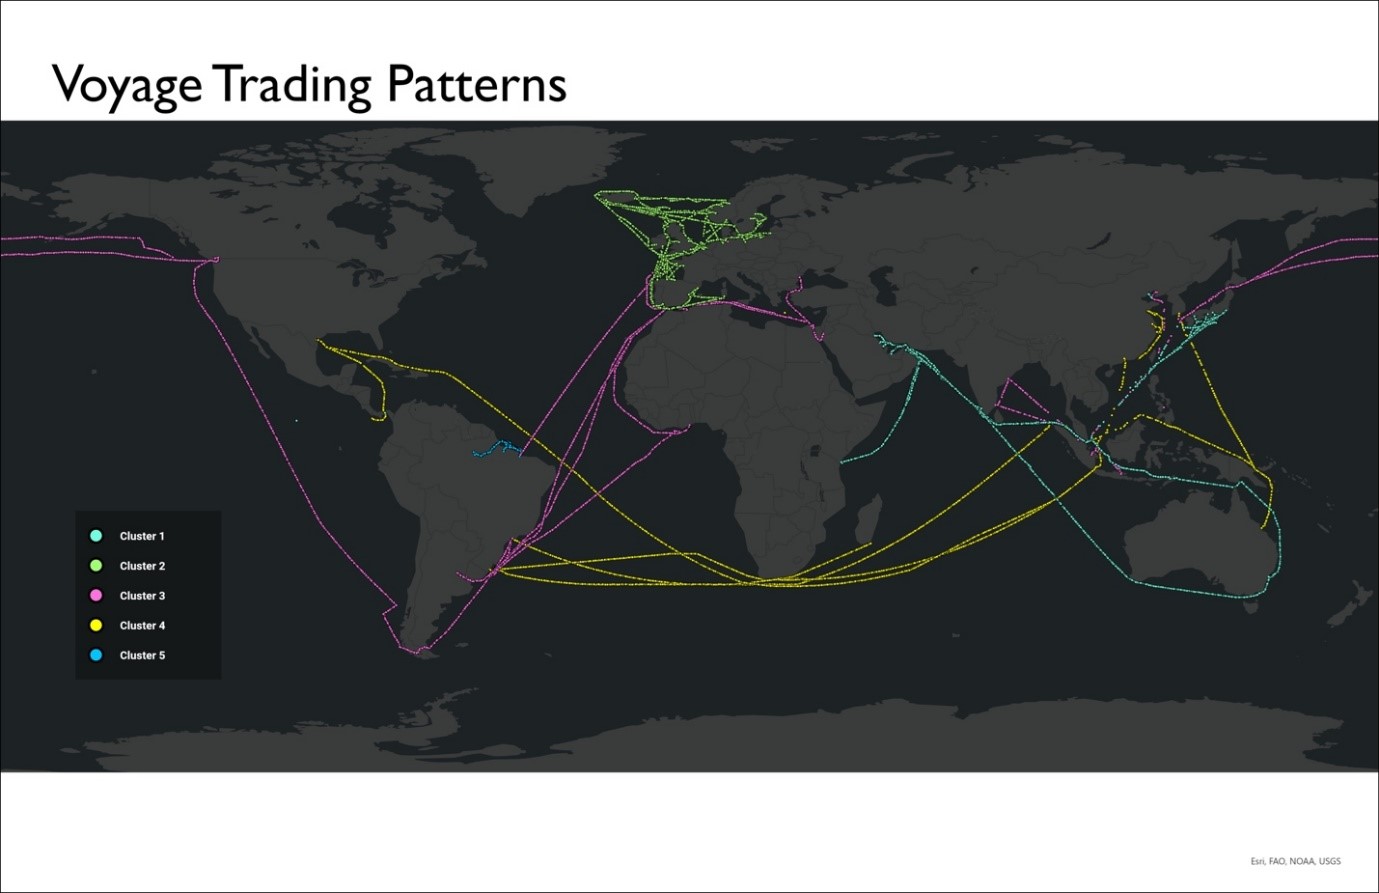 votyage tradeing patterns map